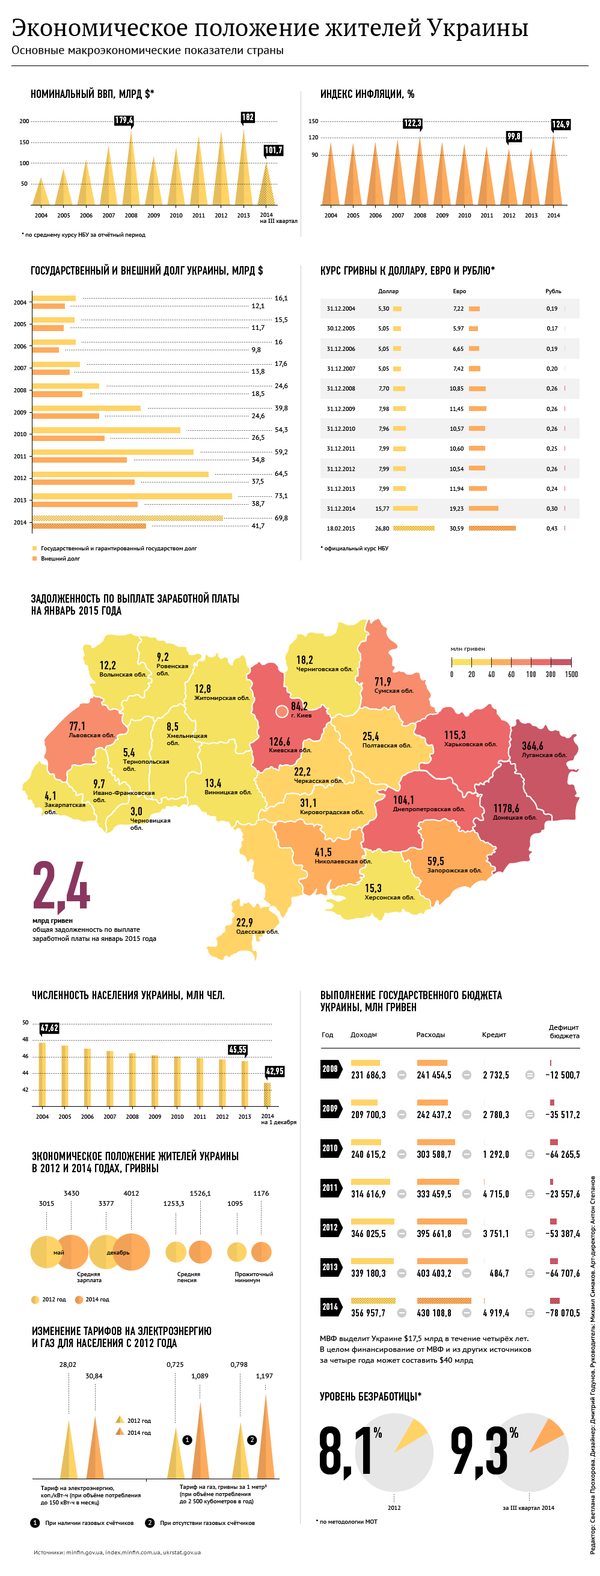 Экономическое положение жителей Украины - Sputnik Грузия